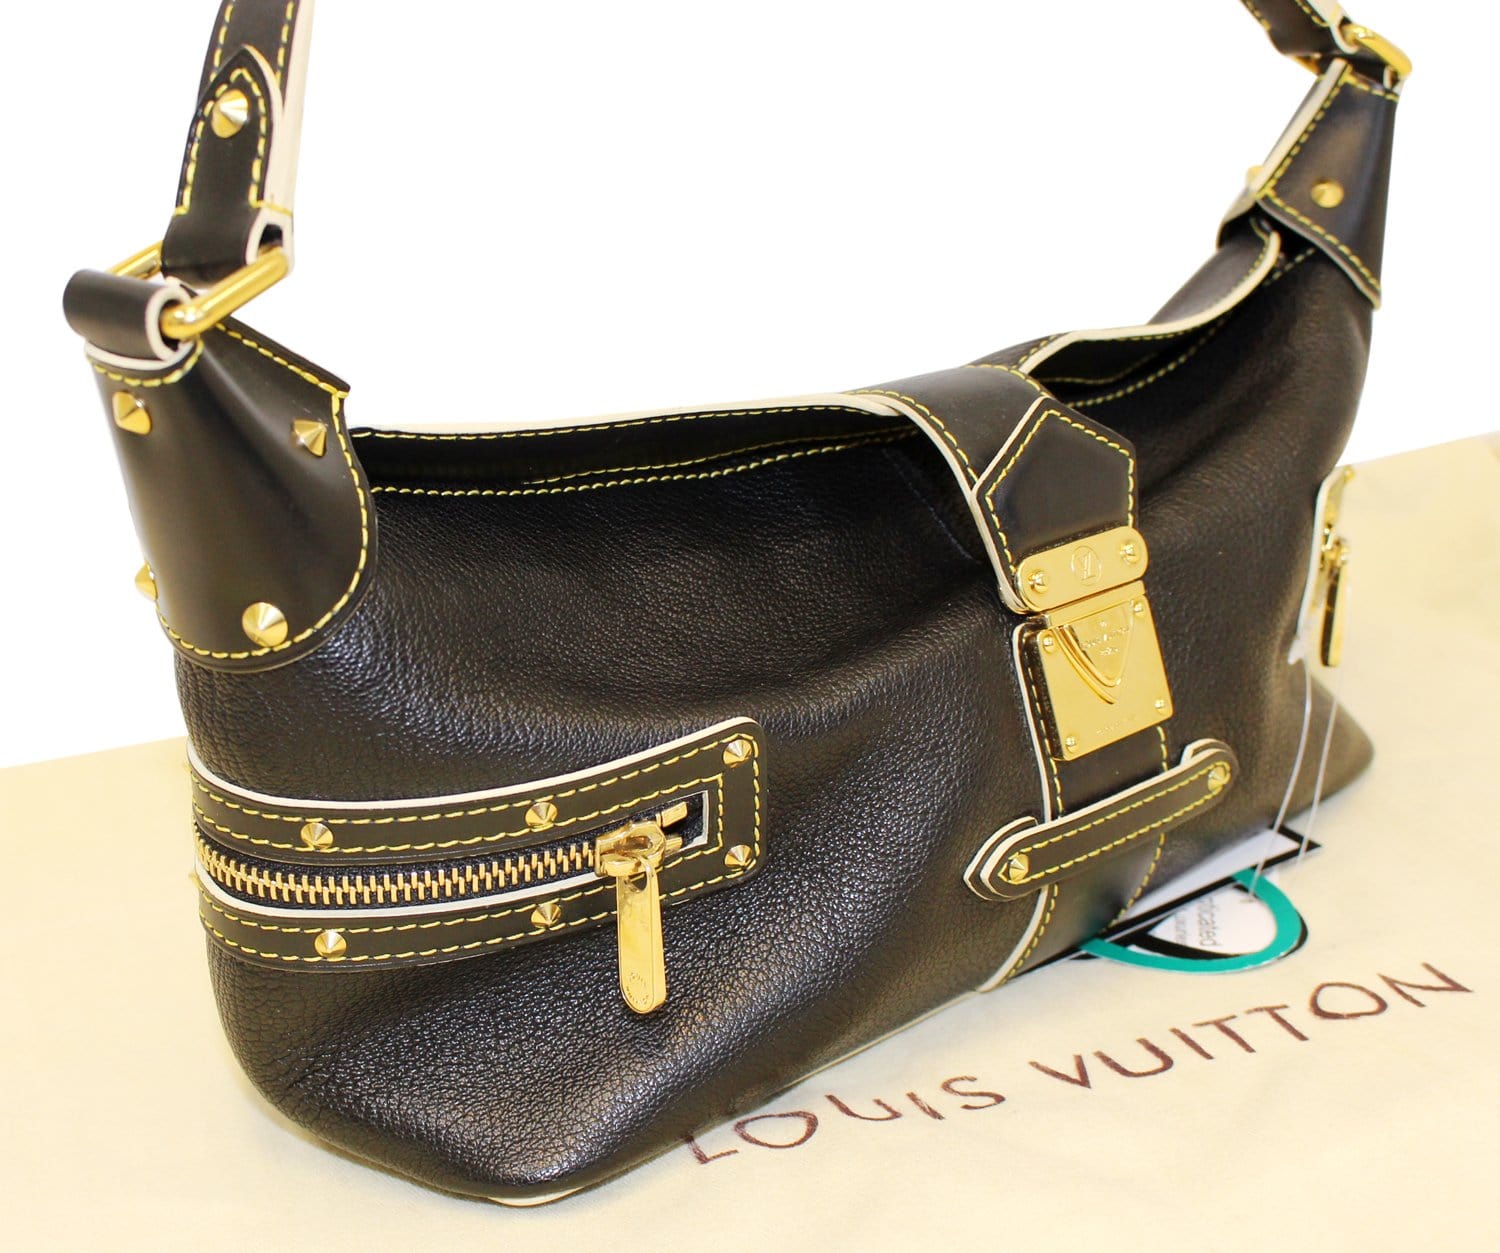 Louis Vuitton Black Suhali Leather Le Confident Bag.  Luxury